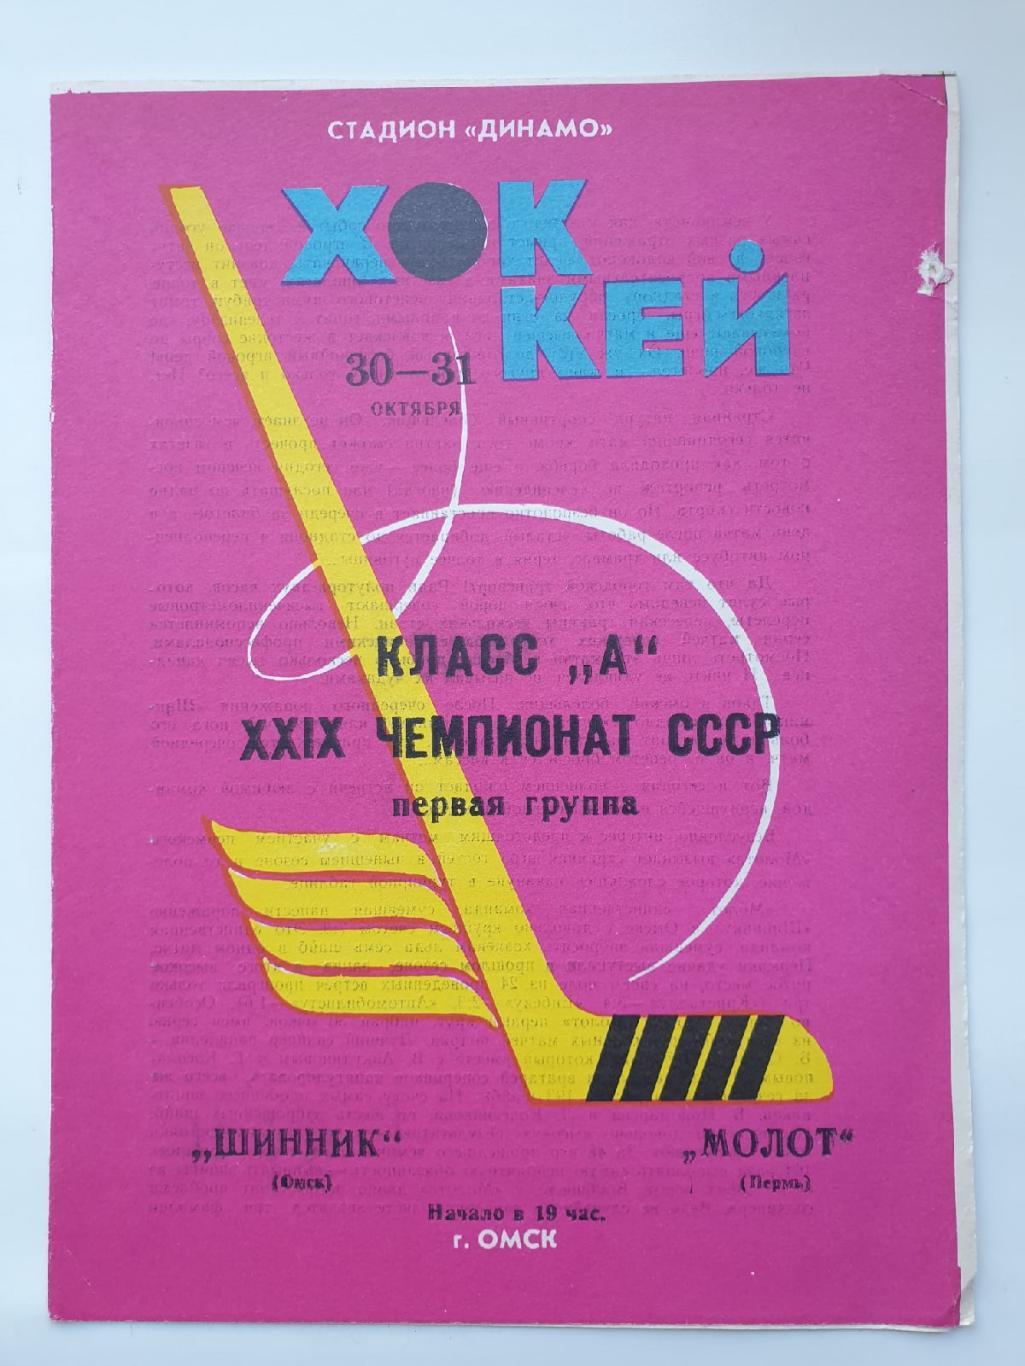 Шинник Омск - Молот Пермь 30/31 октября 1974 (красная)